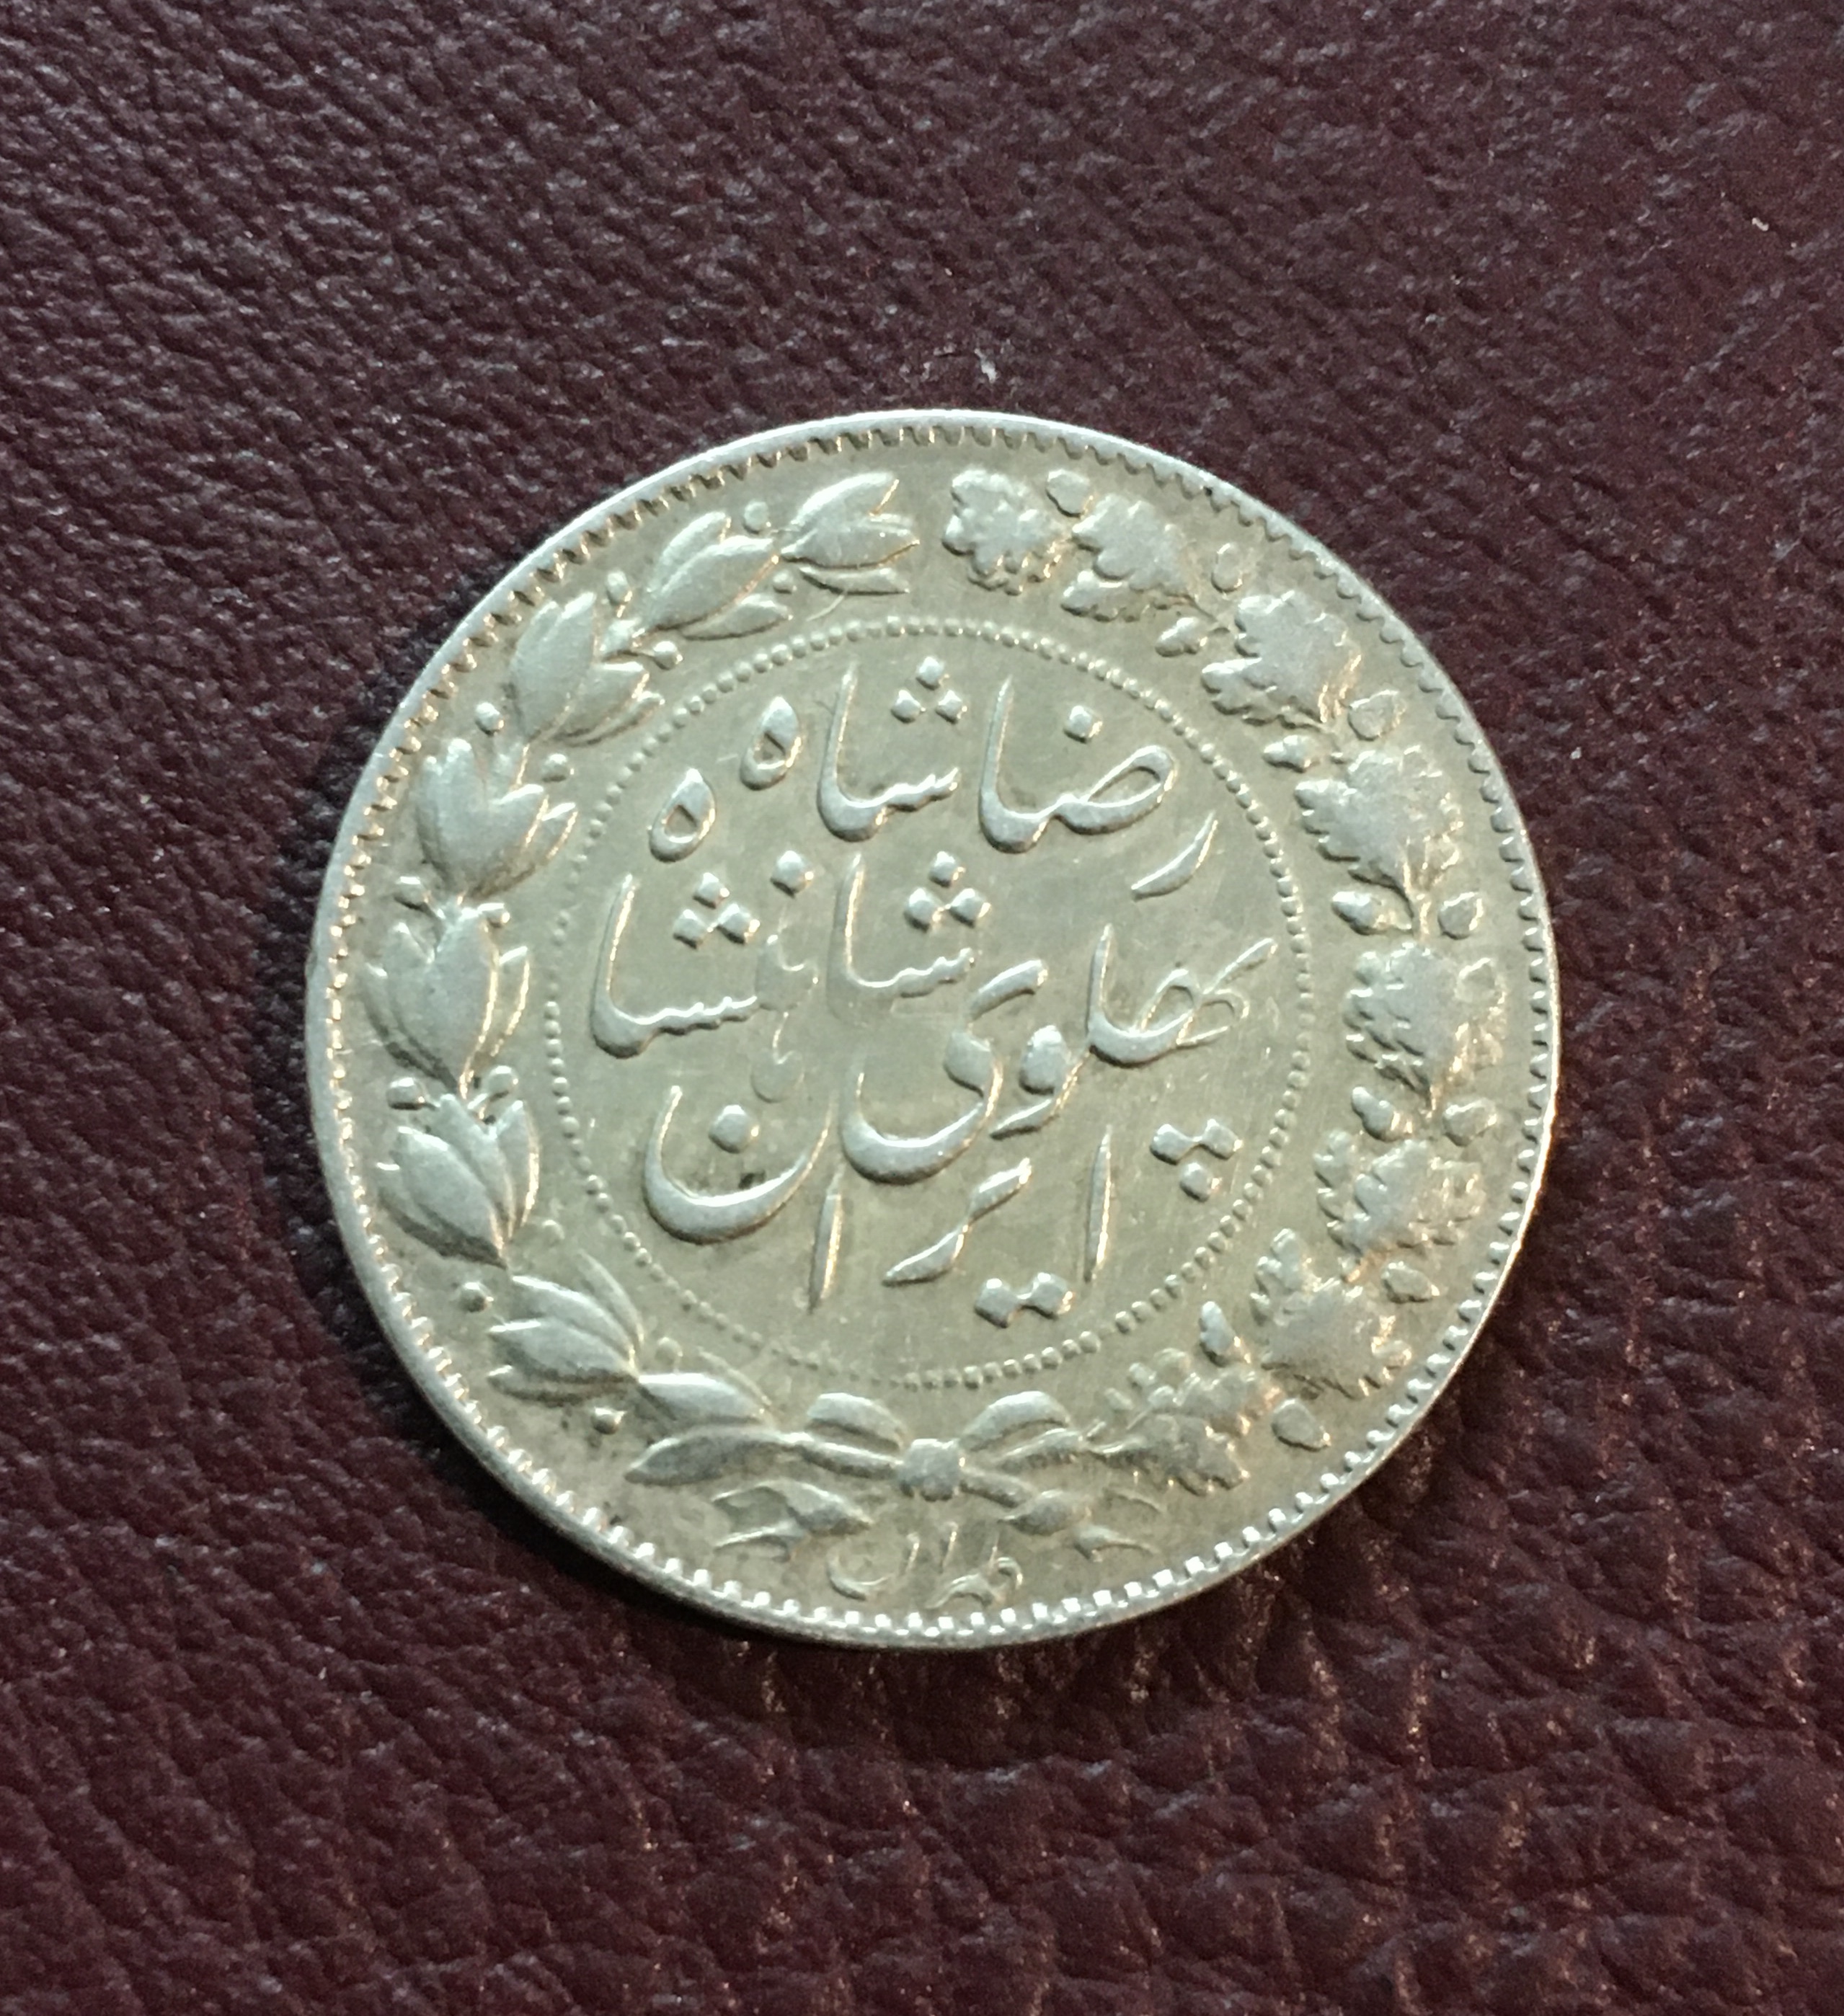 سکه نقره عنوان رضا شاه